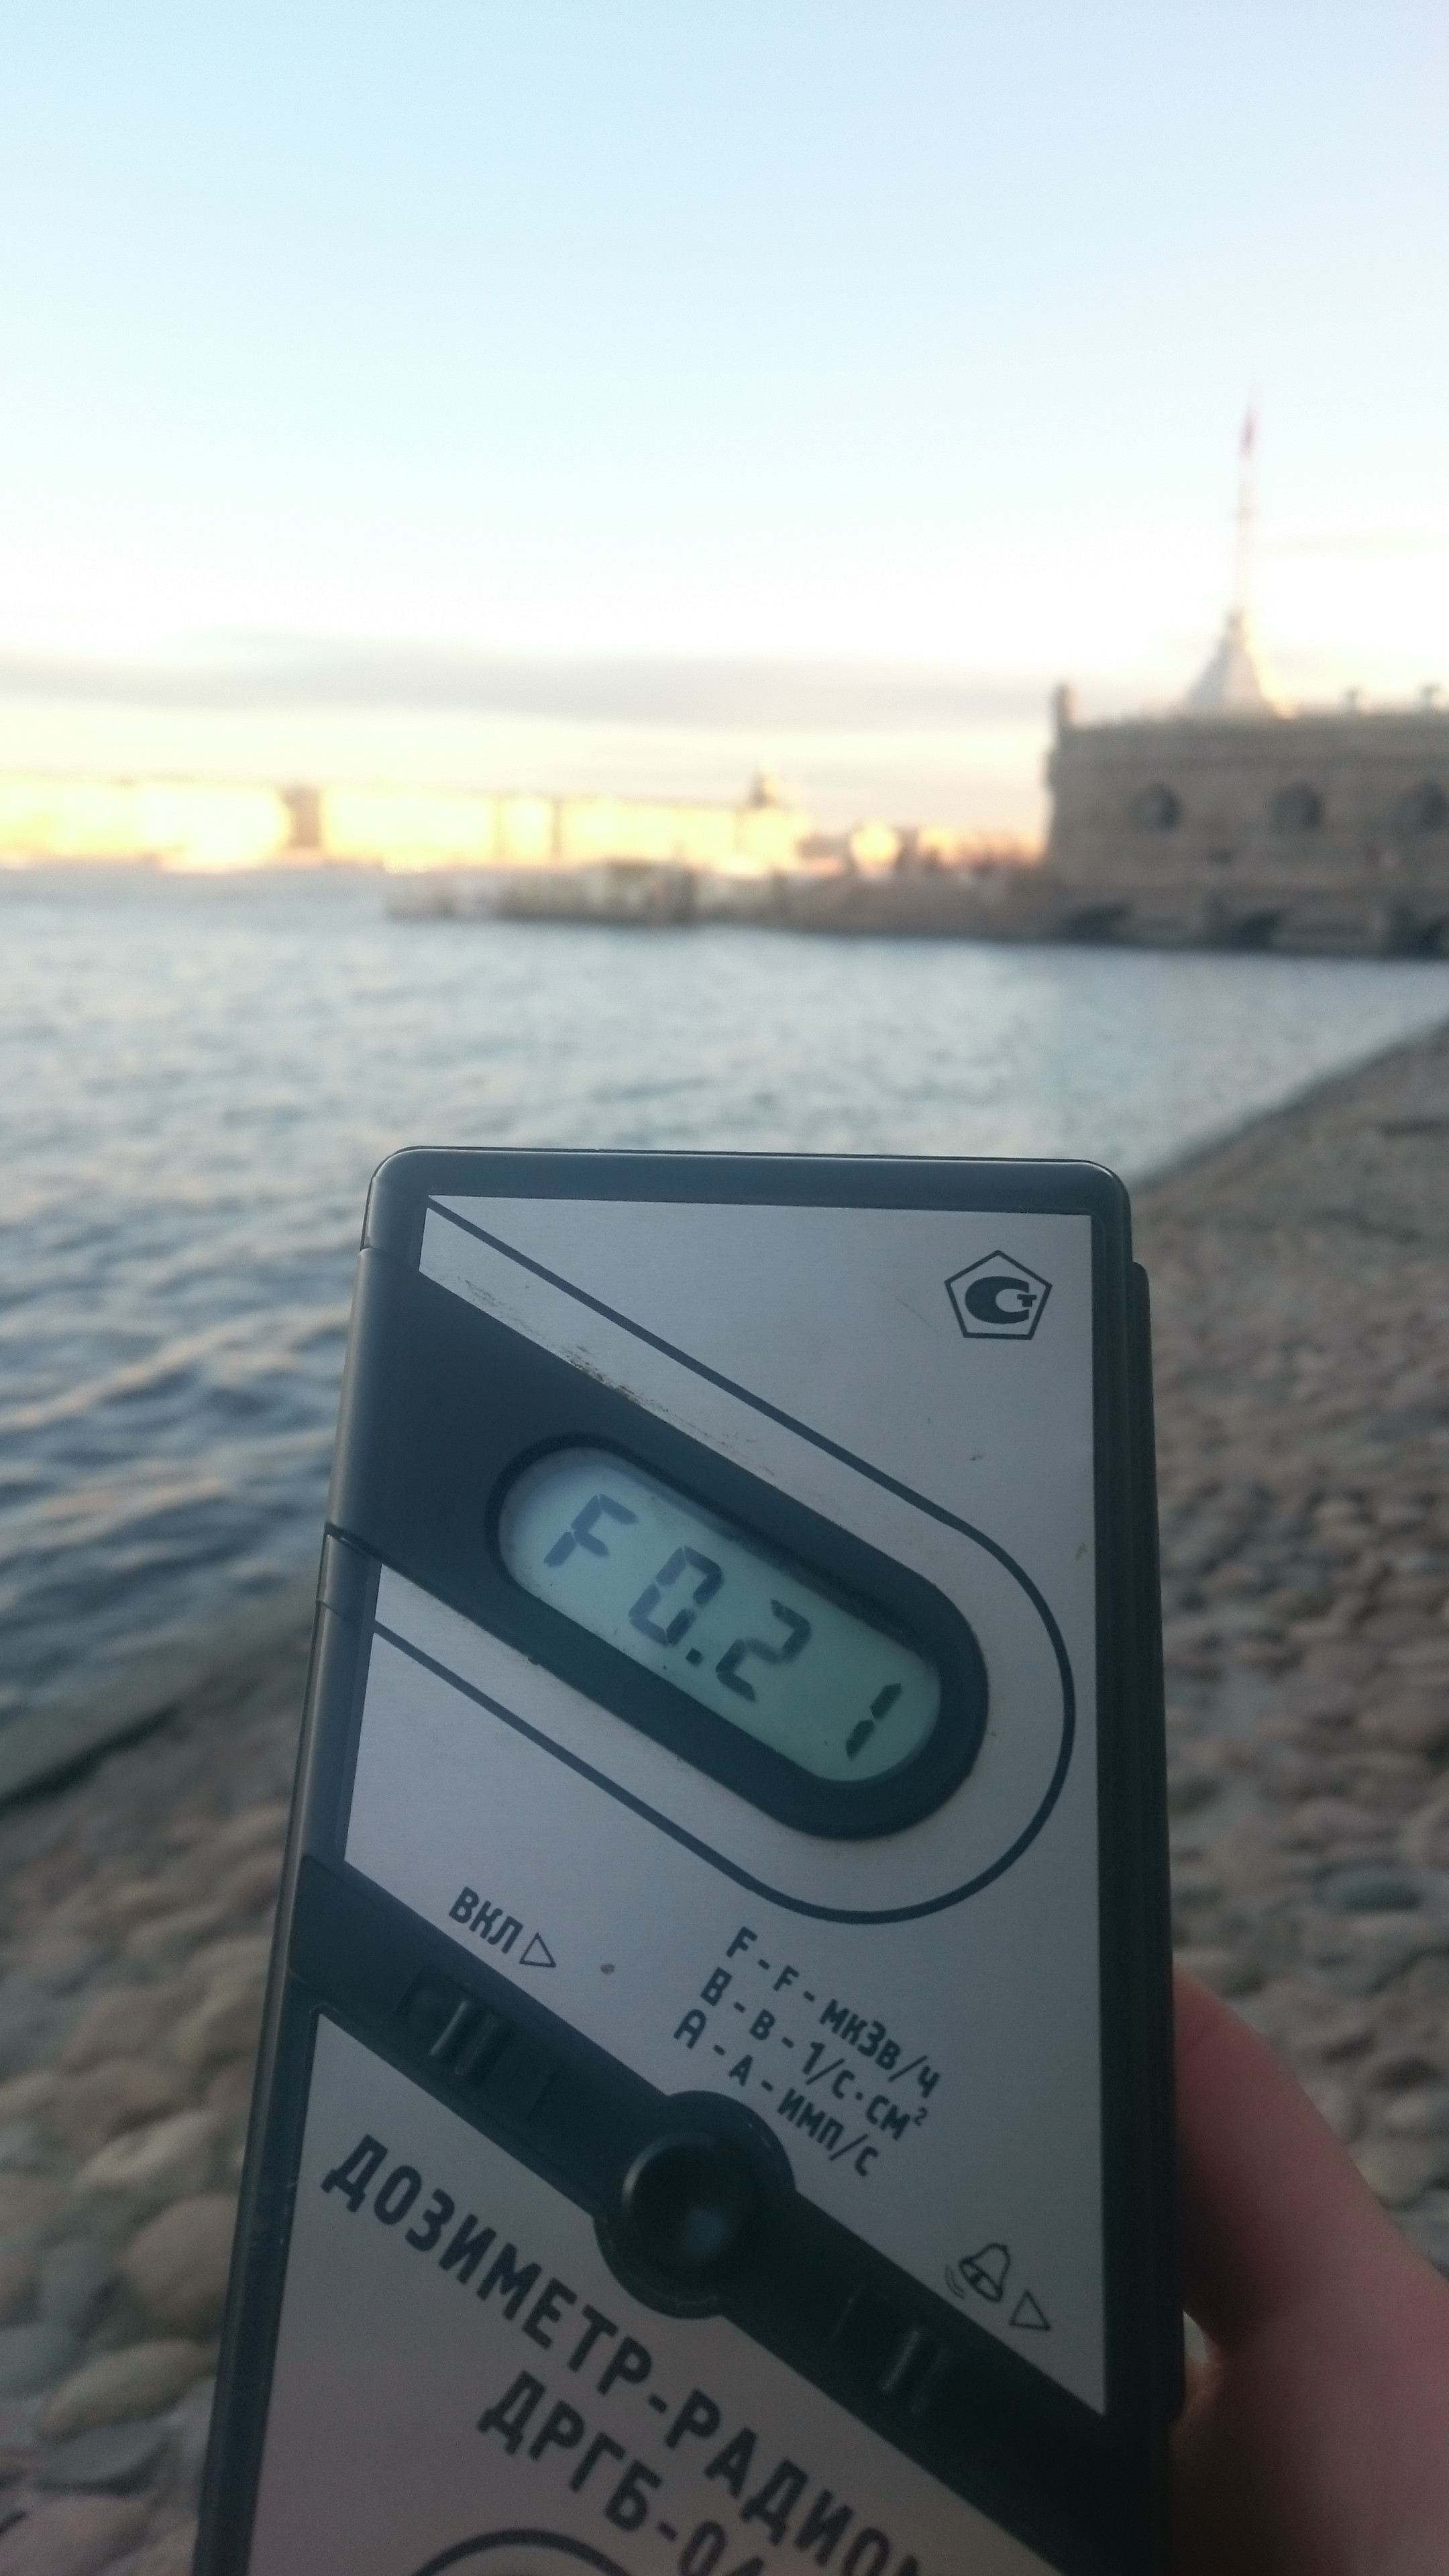 Точка измерения МЭД гамма-излучени на набережной Петропавловской крепости в Санкт-Петербурге